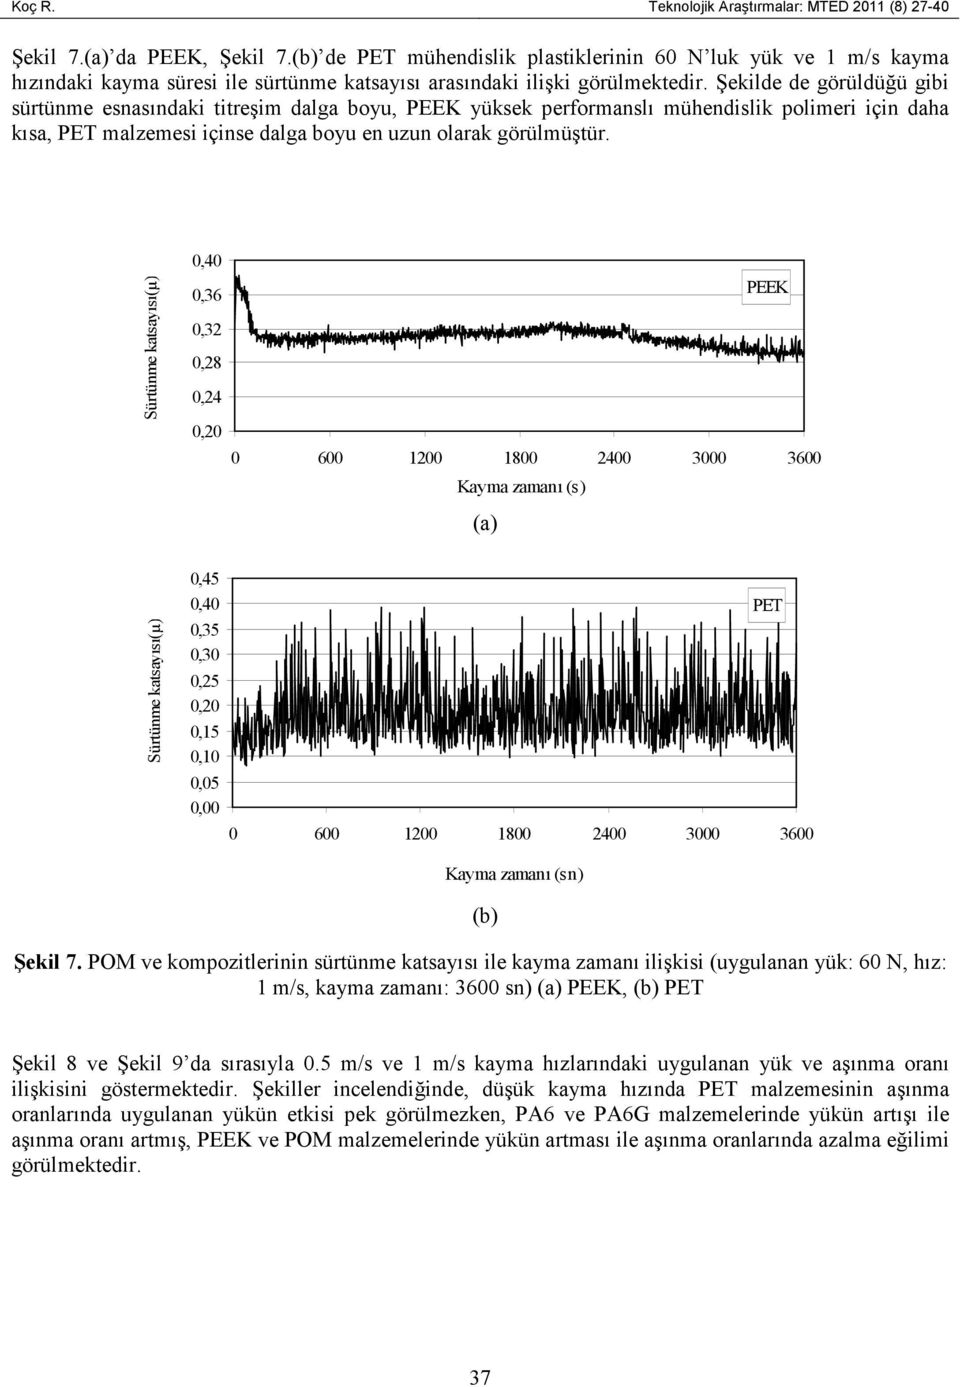 Şekilde de görüldüğü gibi sürtünme esnasındaki titreşim dalga boyu, PEEK yüksek performanslı mühendislik polimeri için daha kısa, PET malzemesi içinse dalga boyu en uzun olarak görülmüştür.